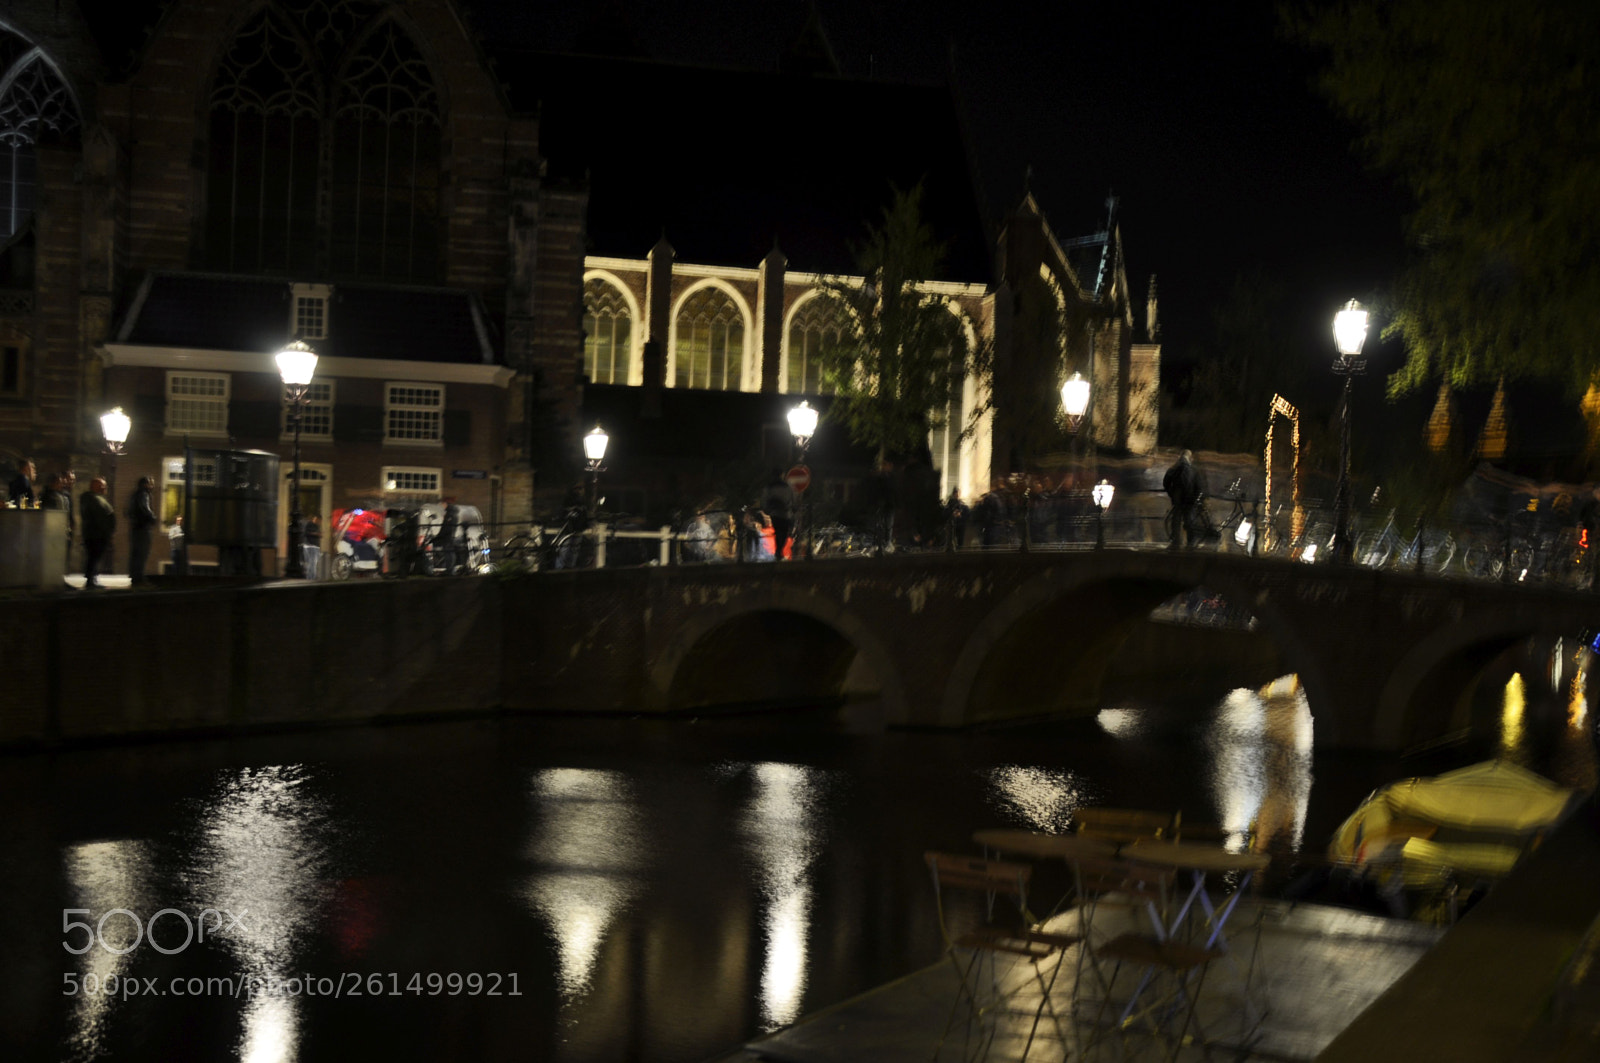 Nikon D90 sample photo. Amsterdam at night photography